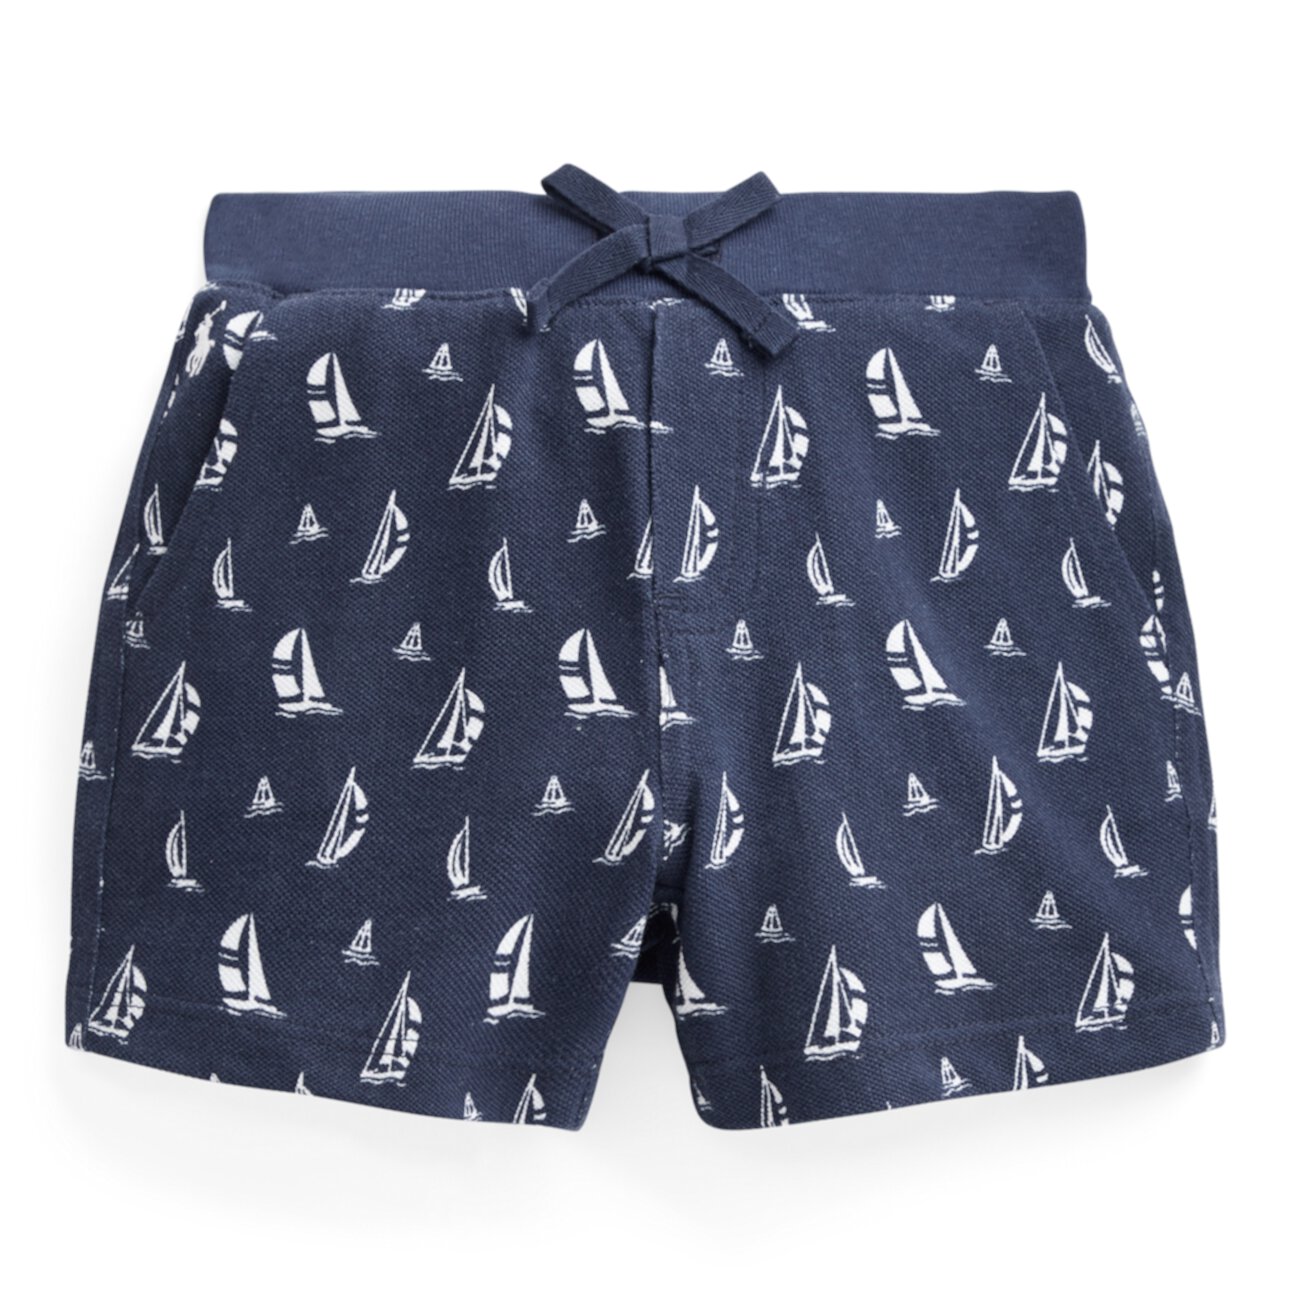 Короткие хлопковые сетчатые шорты с принтом парусных лодок Ralph Lauren